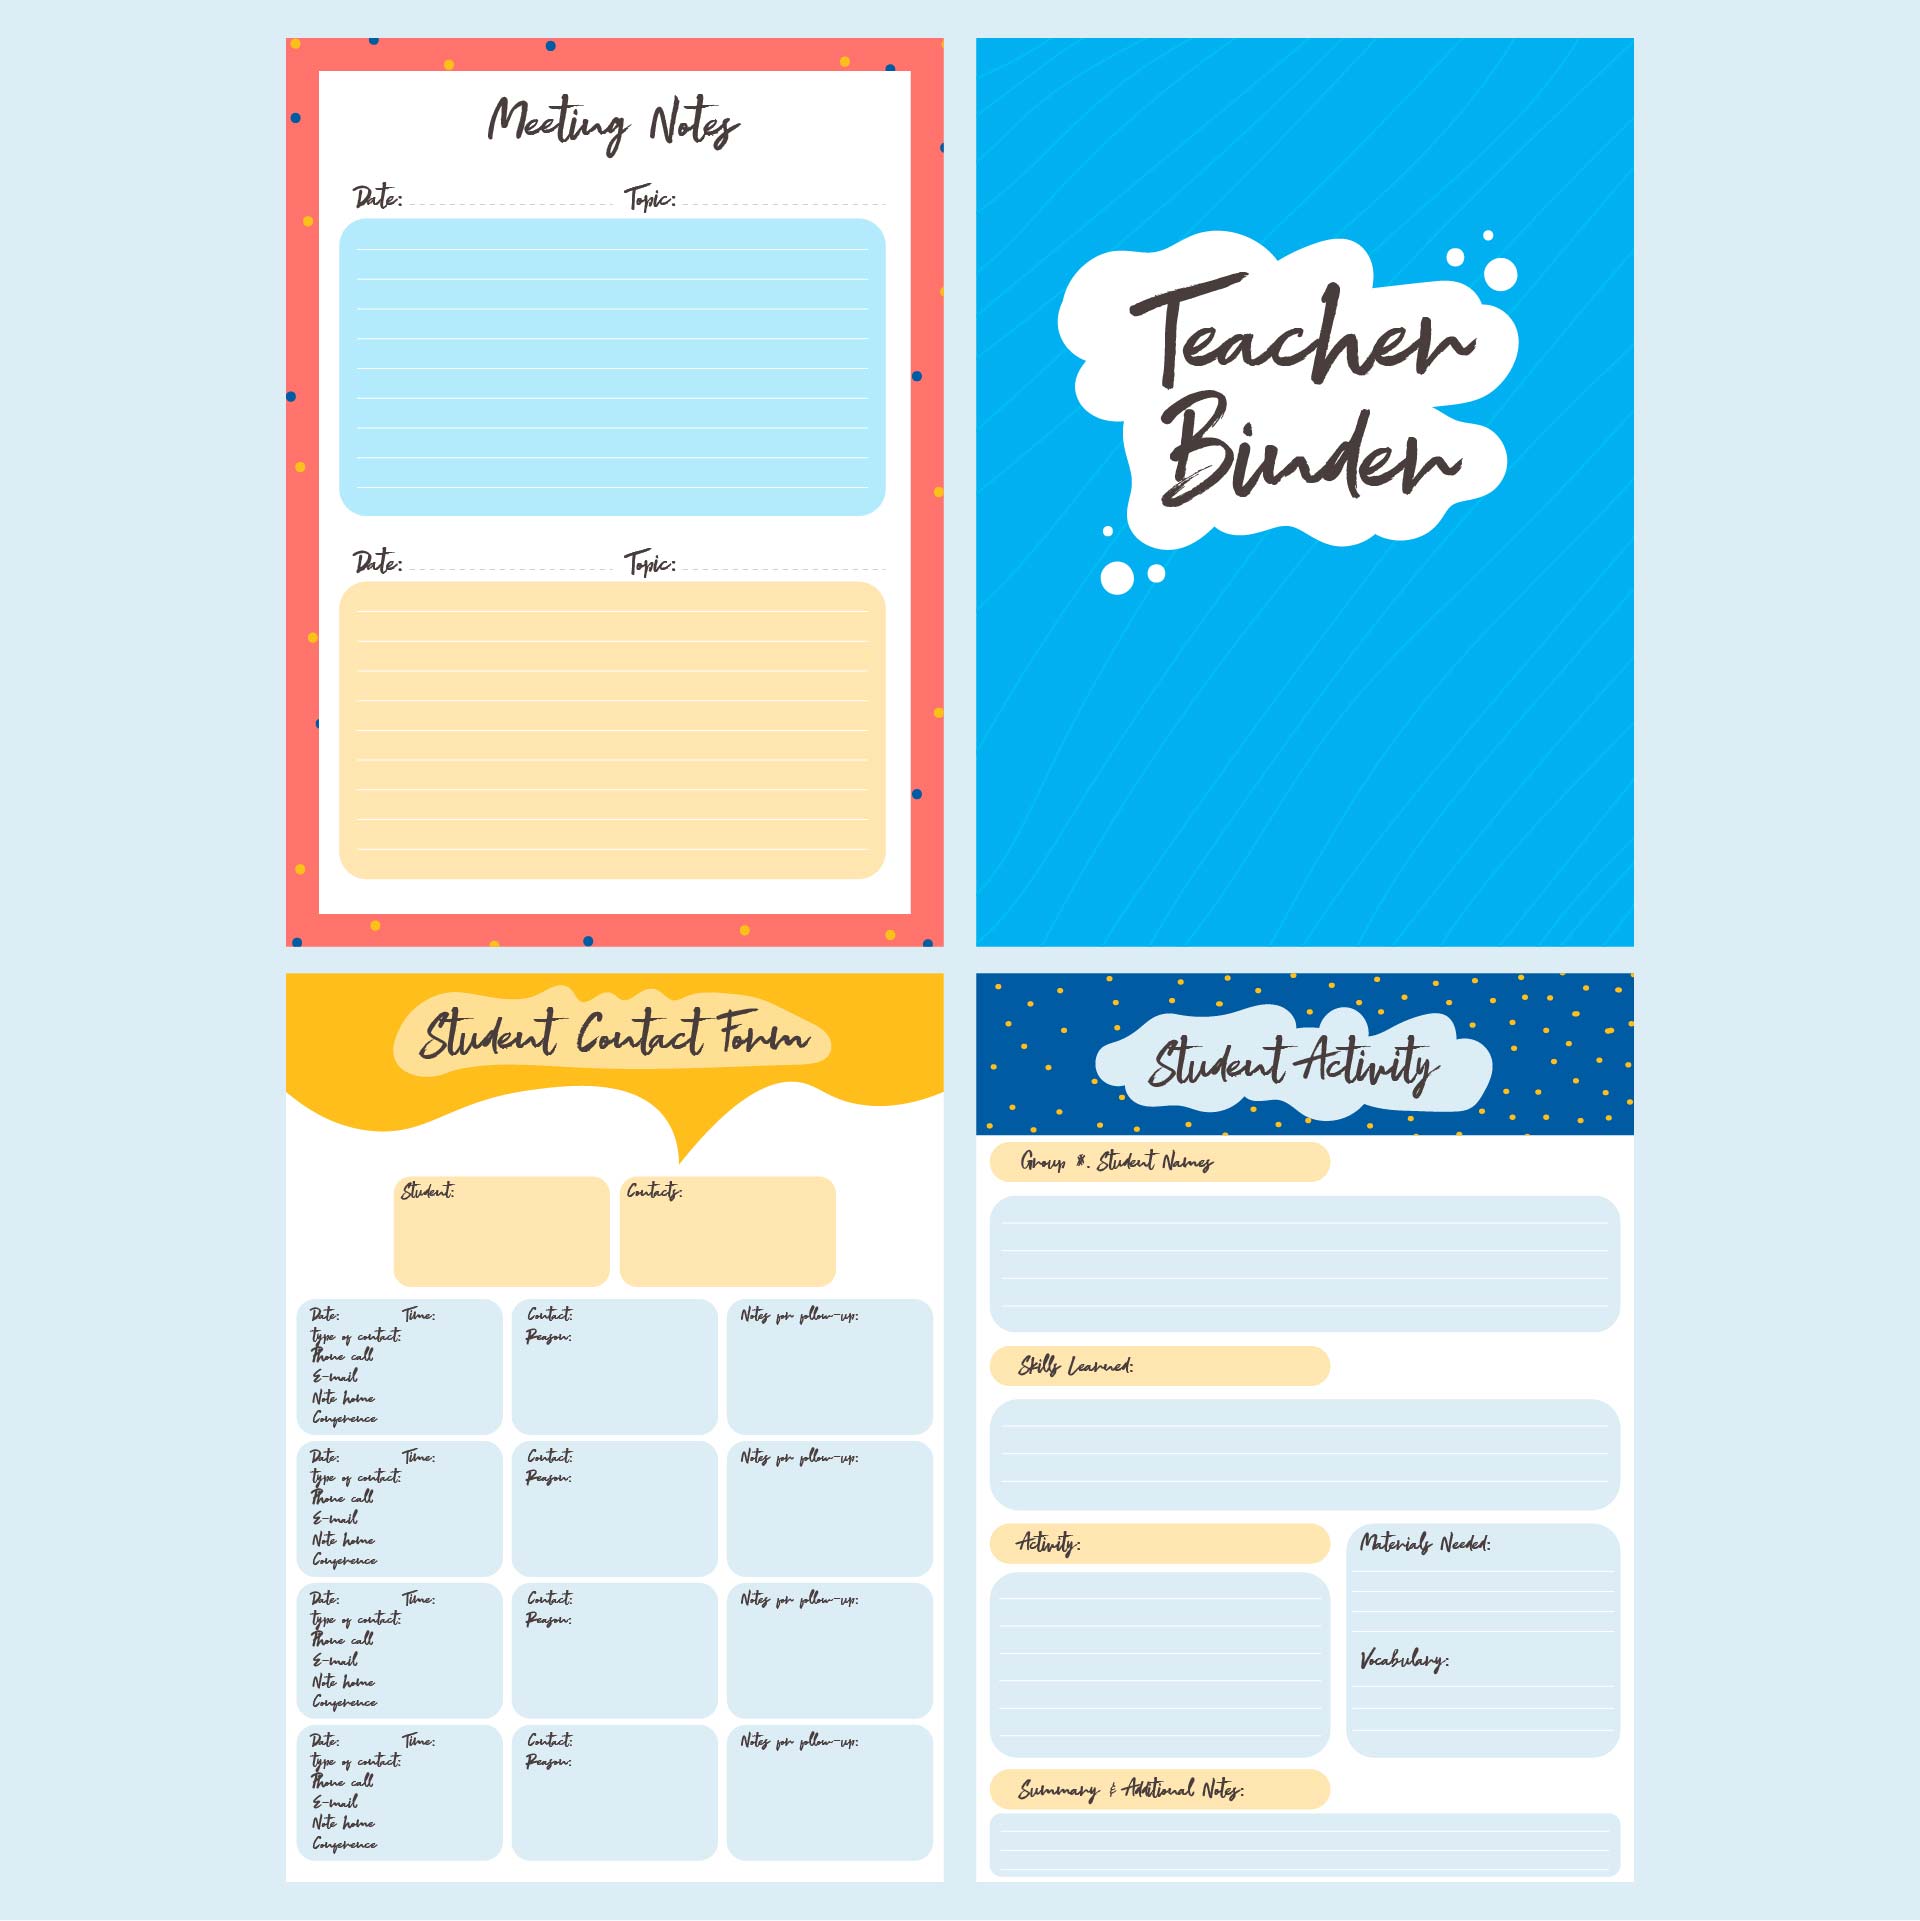 Teacher Planning Calendar Printable